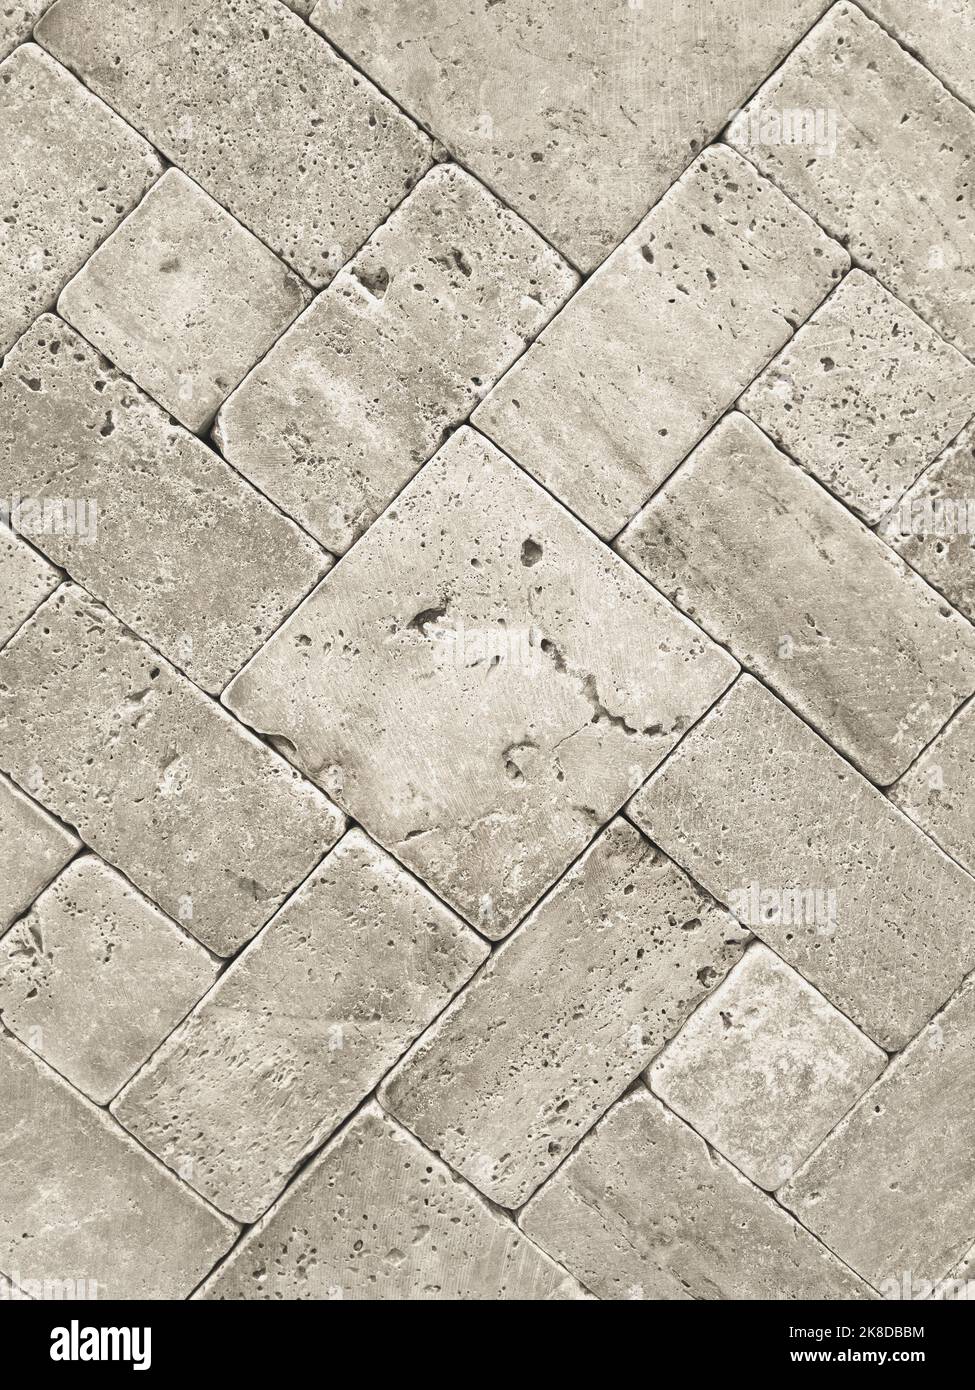 pavement pavestone paving bricks stone bricks, closeup Stock Photo